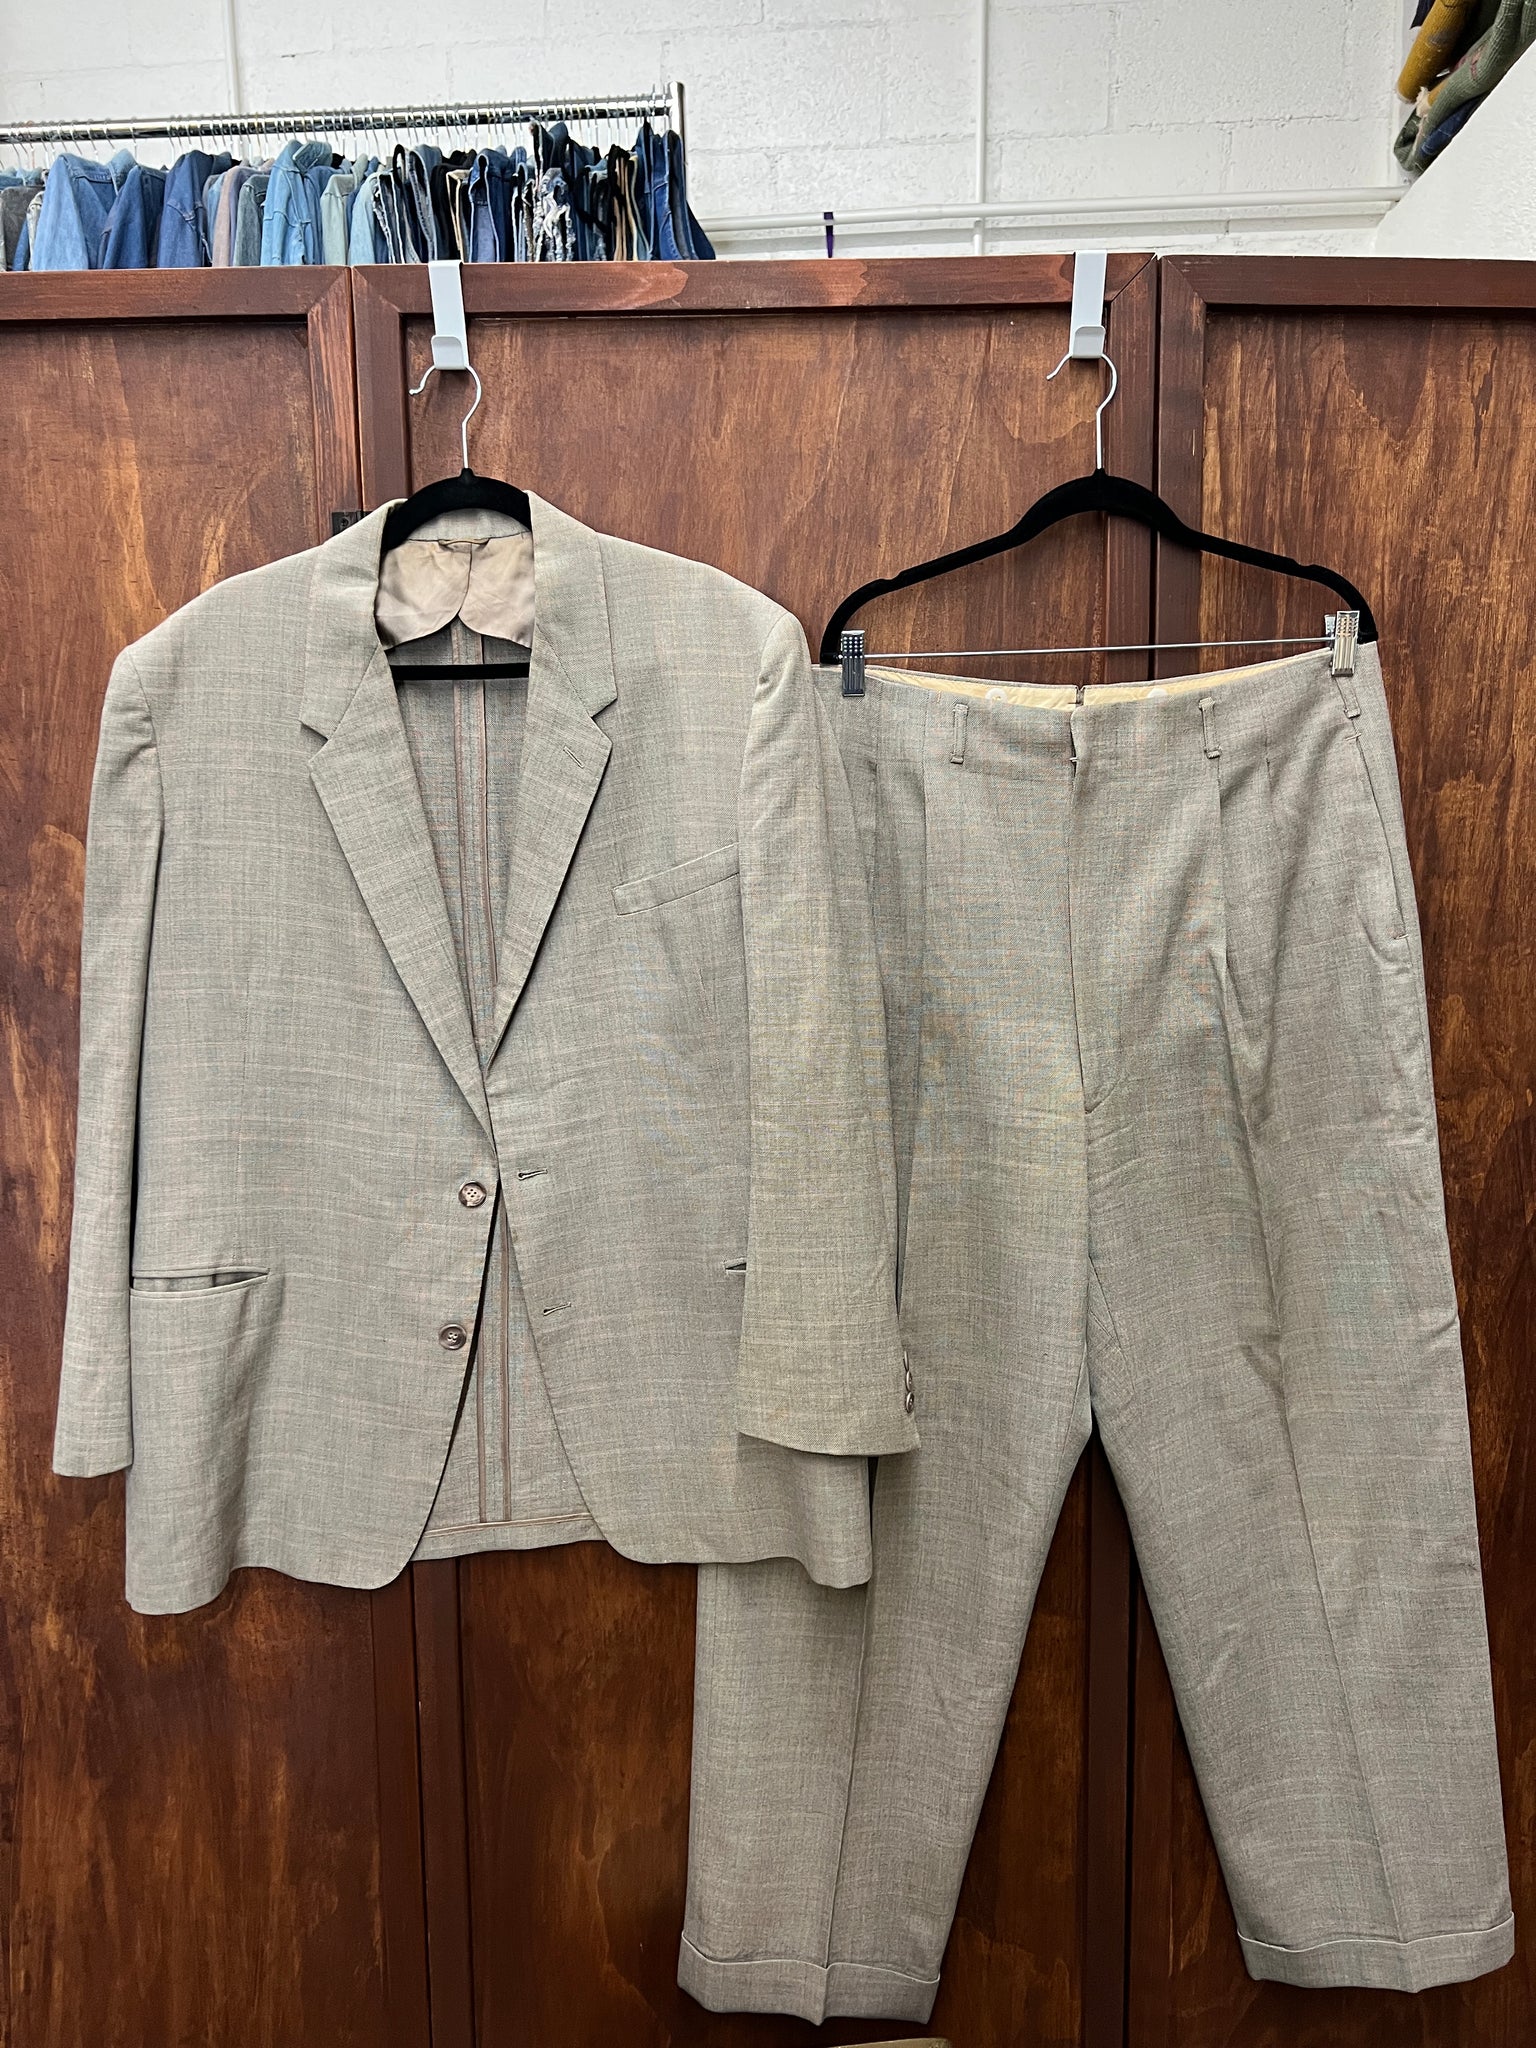 RENTAL Johnny Foam 1960s Men's Suit